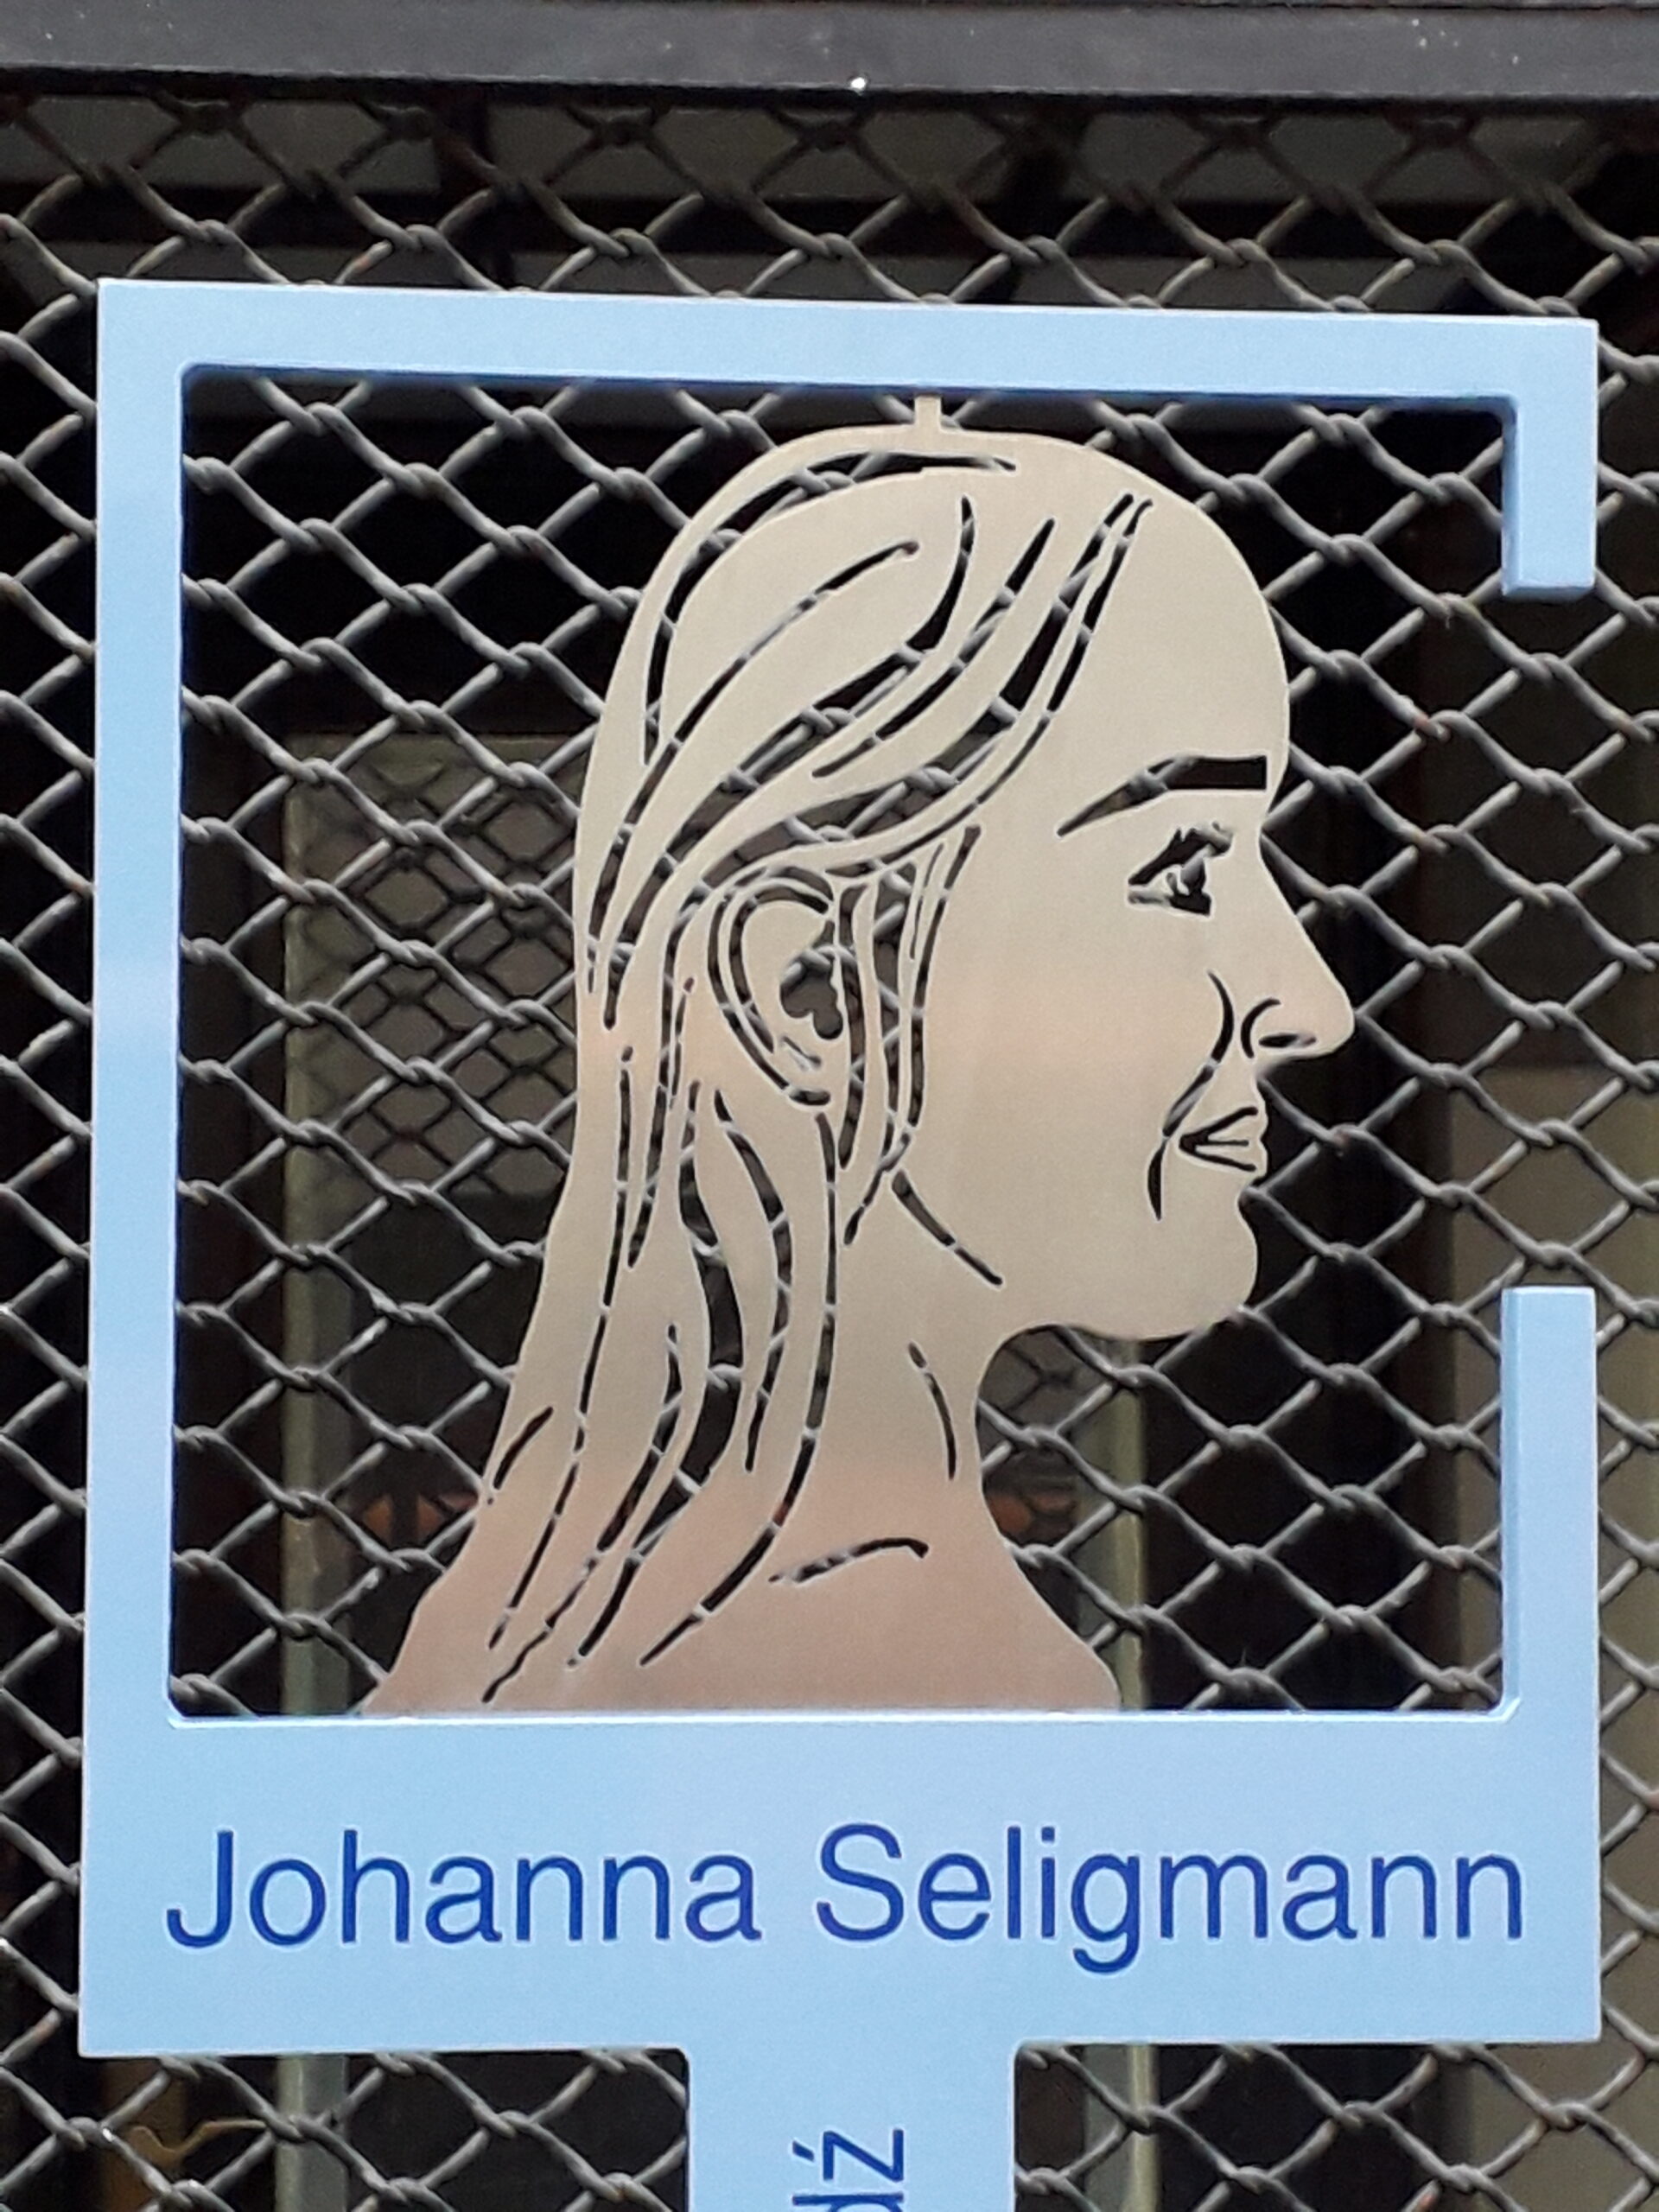 Porträt zu Johanna Seligmann